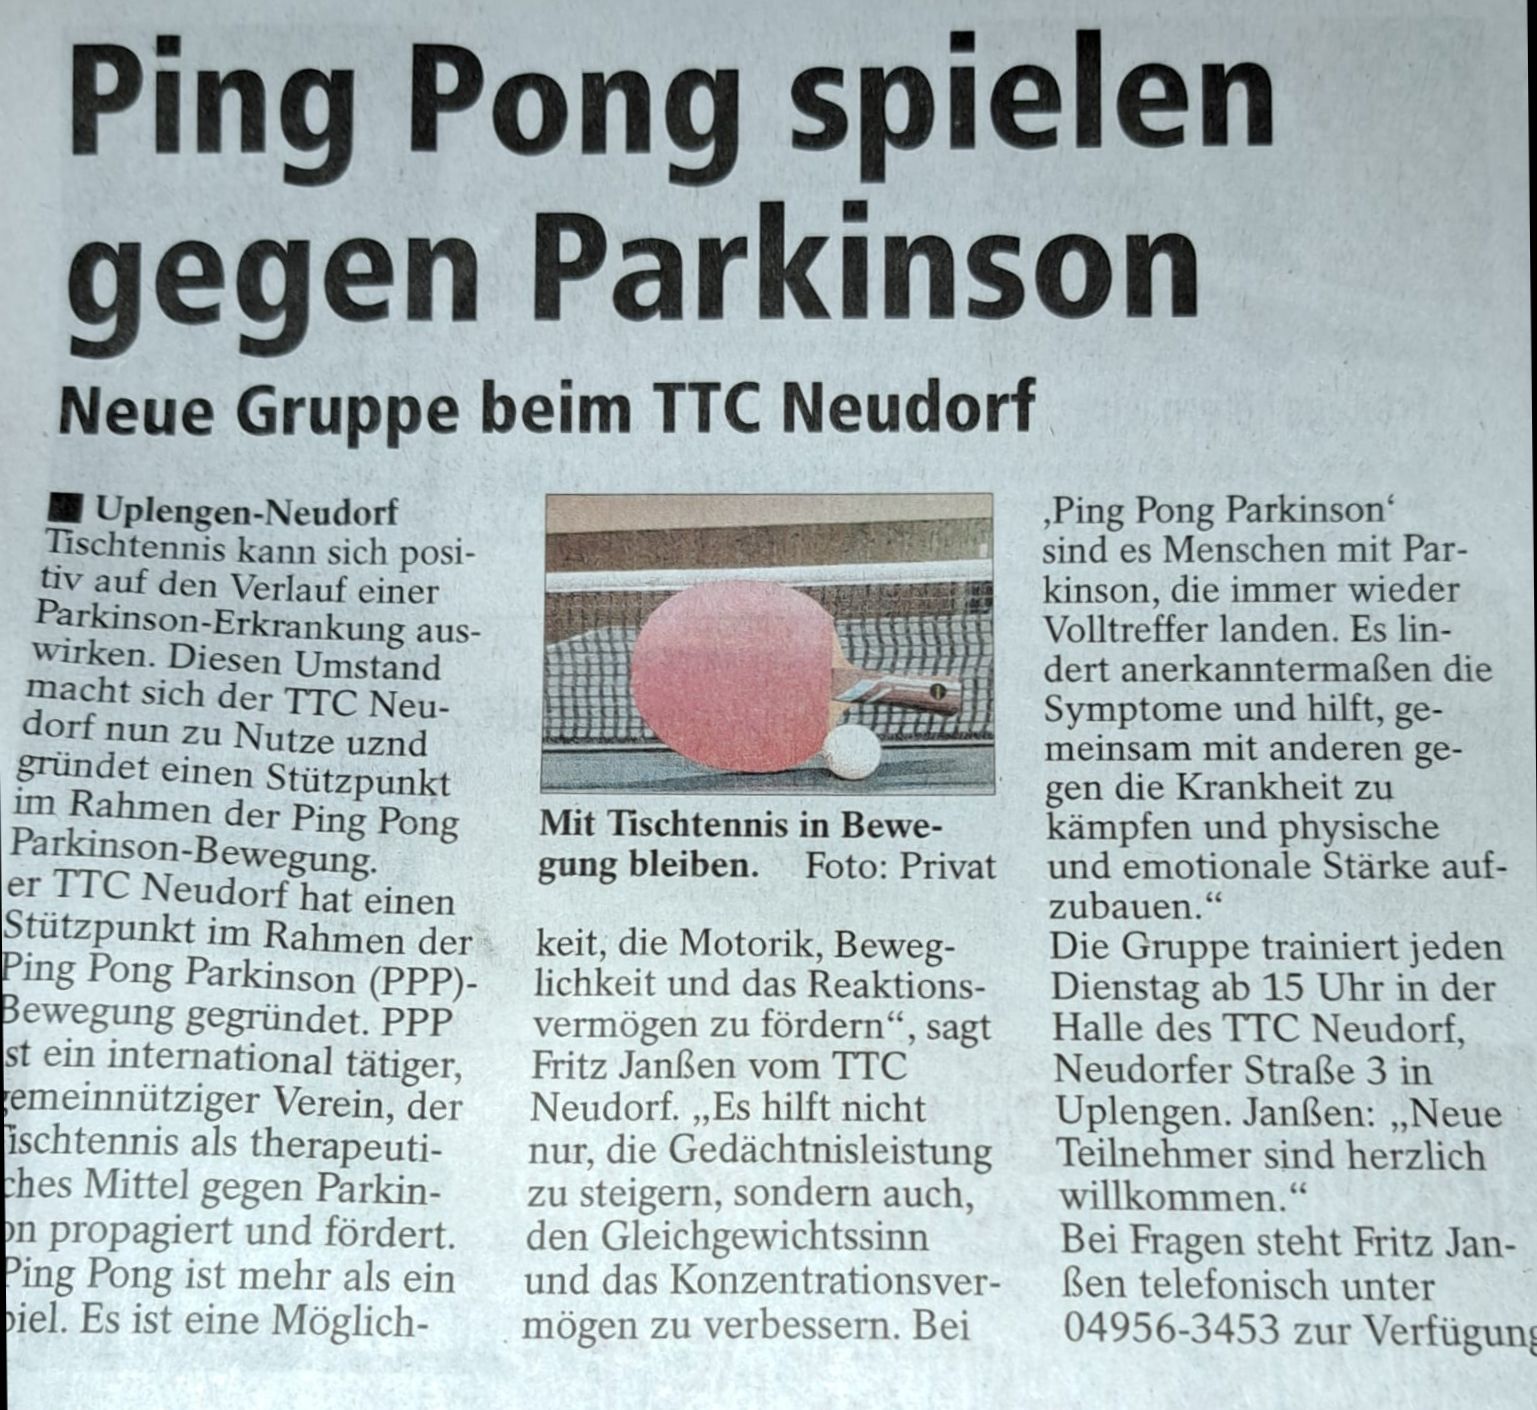 Ping Pong spielen gegen Parkinson